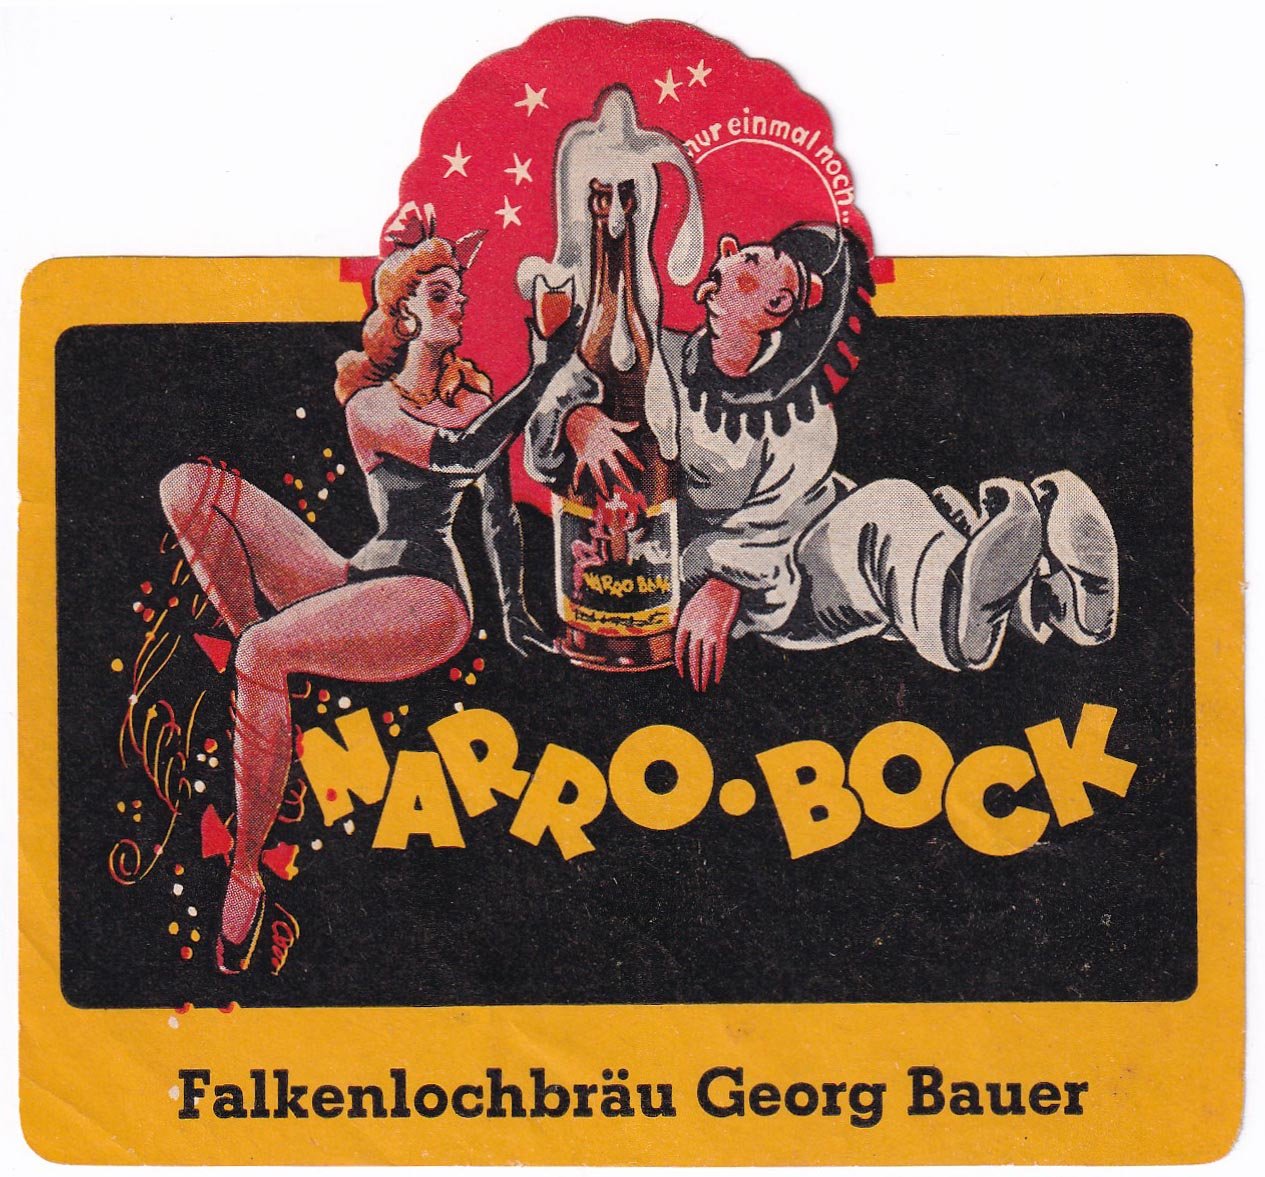 Etikett für Narro-Bock der Falkenlochbräu Georg Bauer in Neuhaus an der Pegnitz, um 1966 (ARCHIV DEUTSCHER BIERETIKETTEN CC BY-NC-SA)